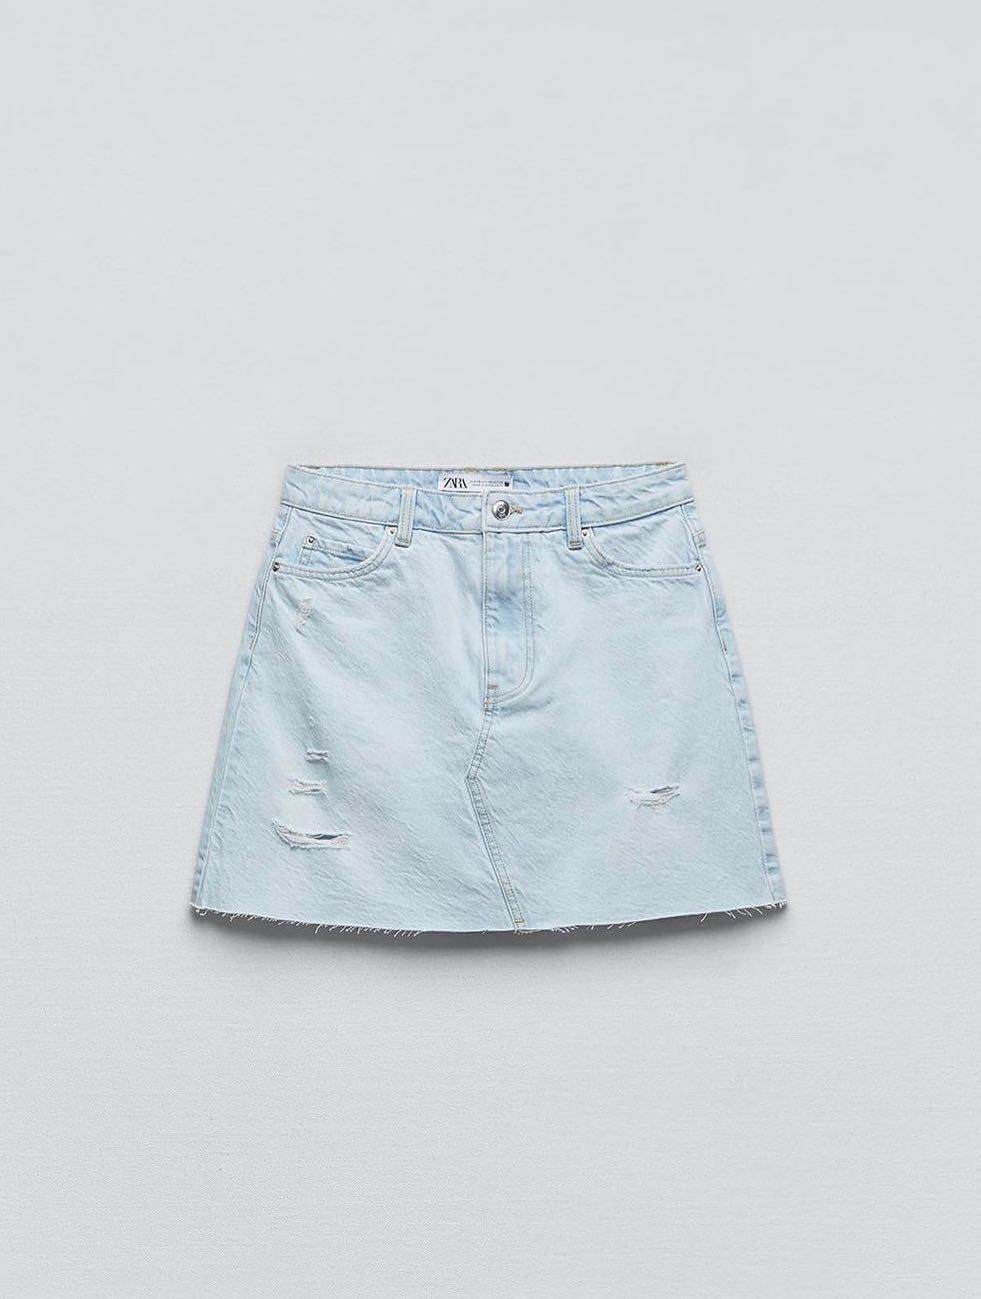 Міні спідничка ZARA джинсовая юбка